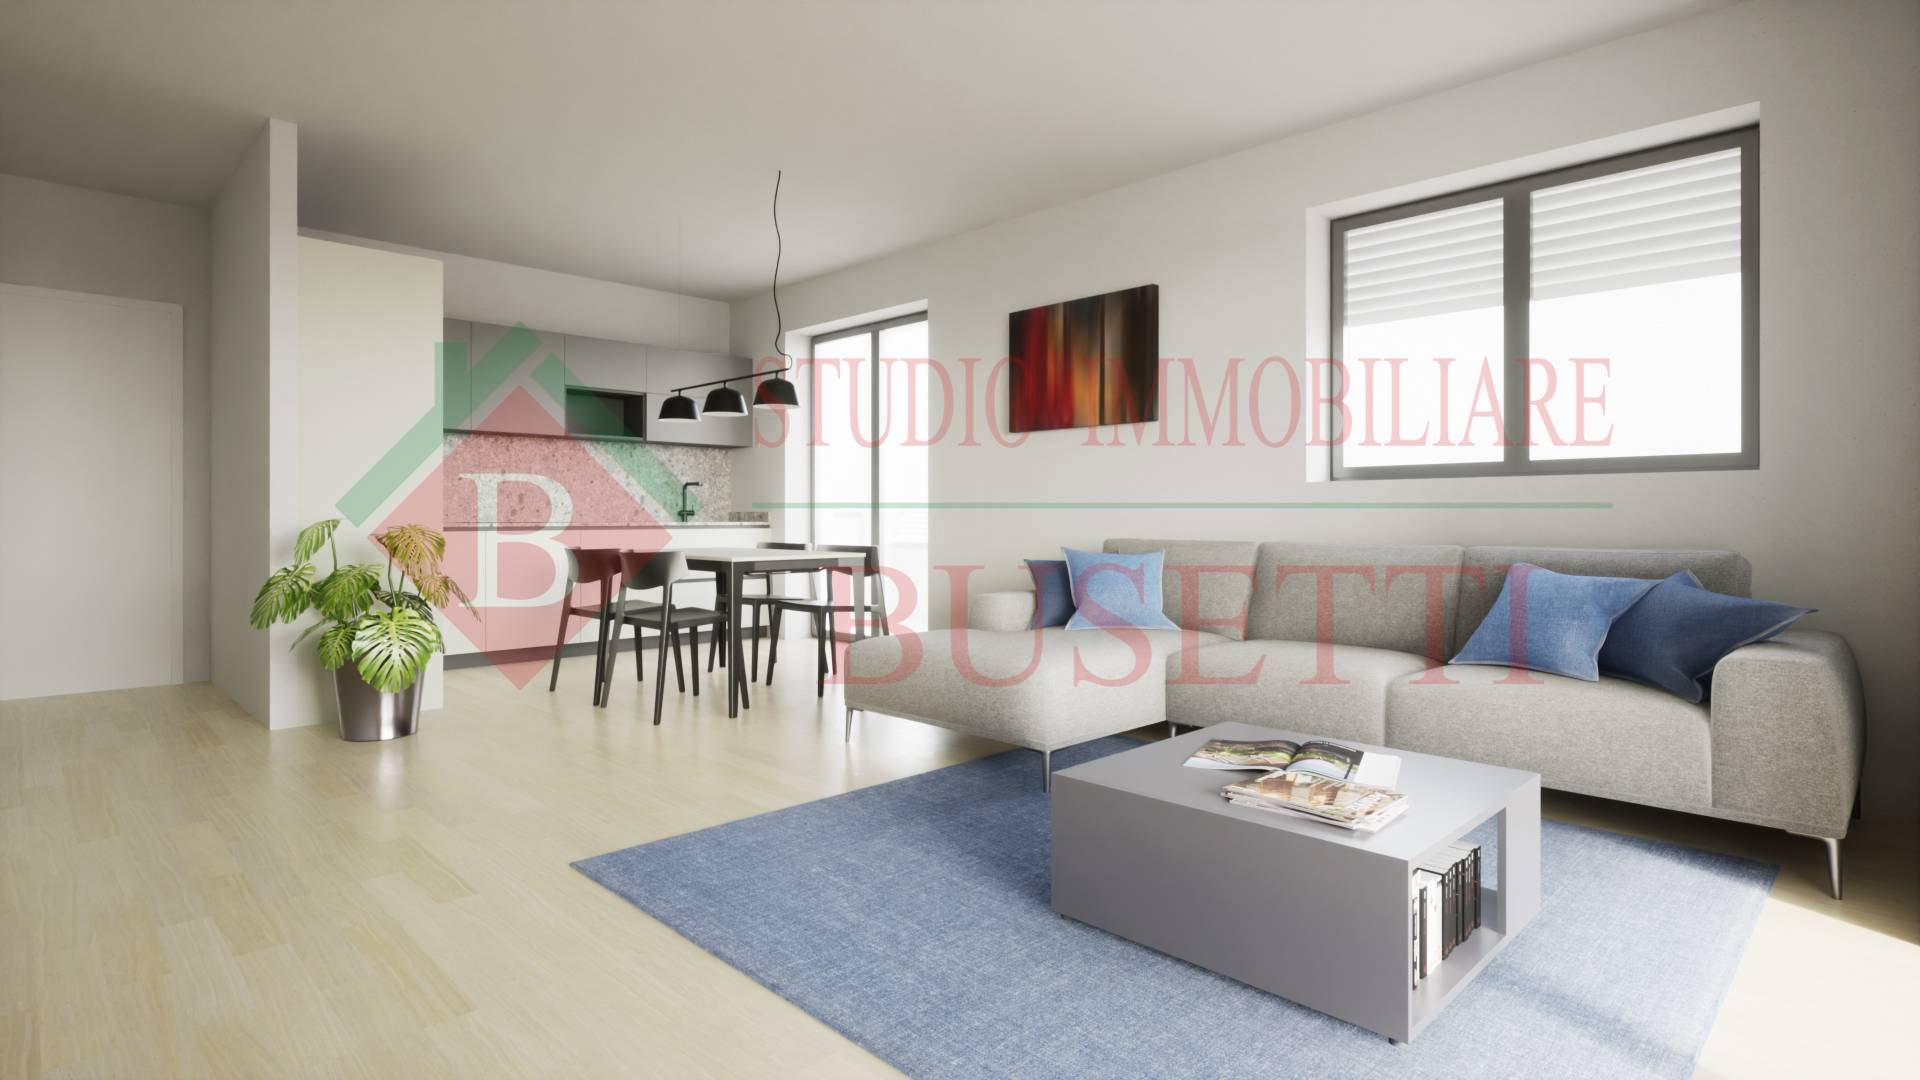 Appartamento in vendita a Solbiate Olona, 3 locali, prezzo € 190.000 | PortaleAgenzieImmobiliari.it